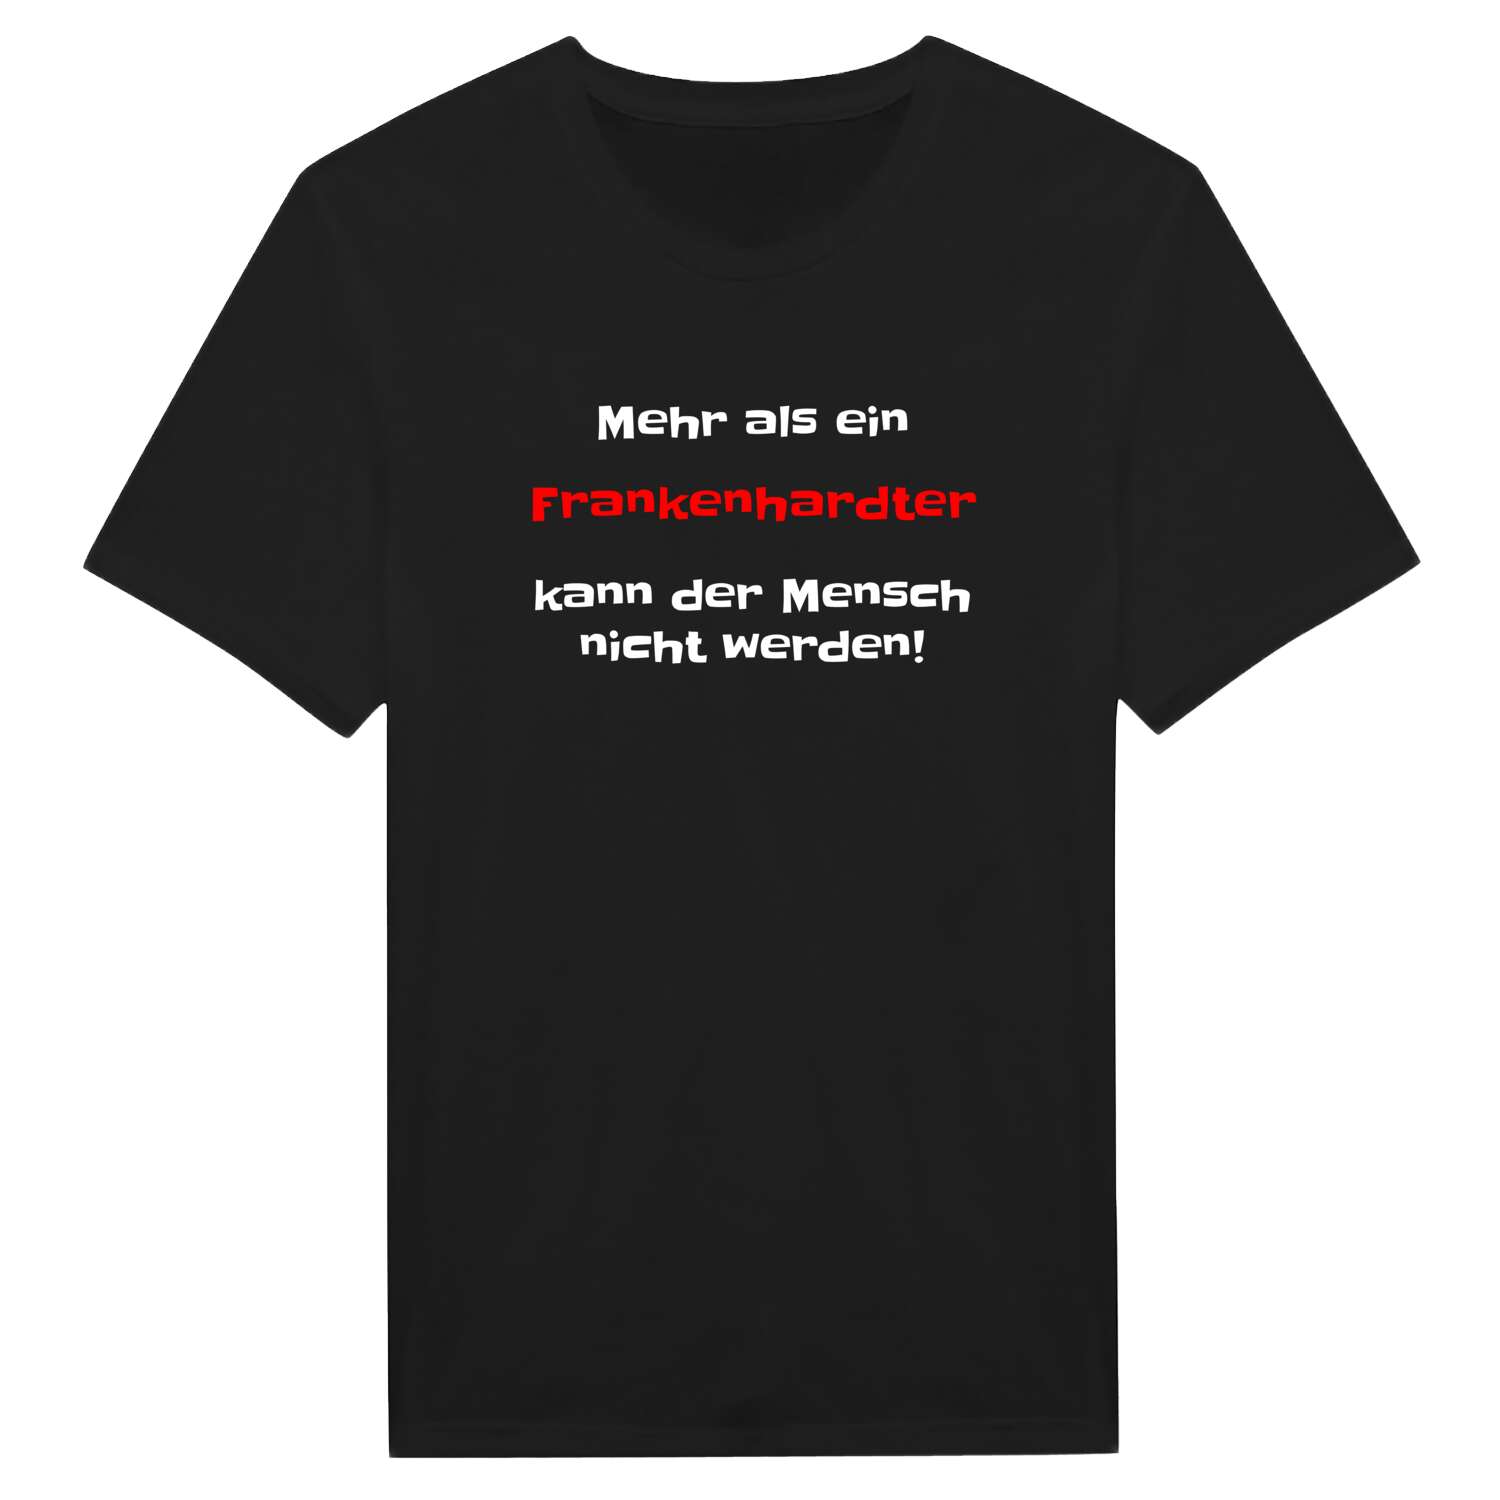 Frankenhardt T-Shirt »Mehr als ein«